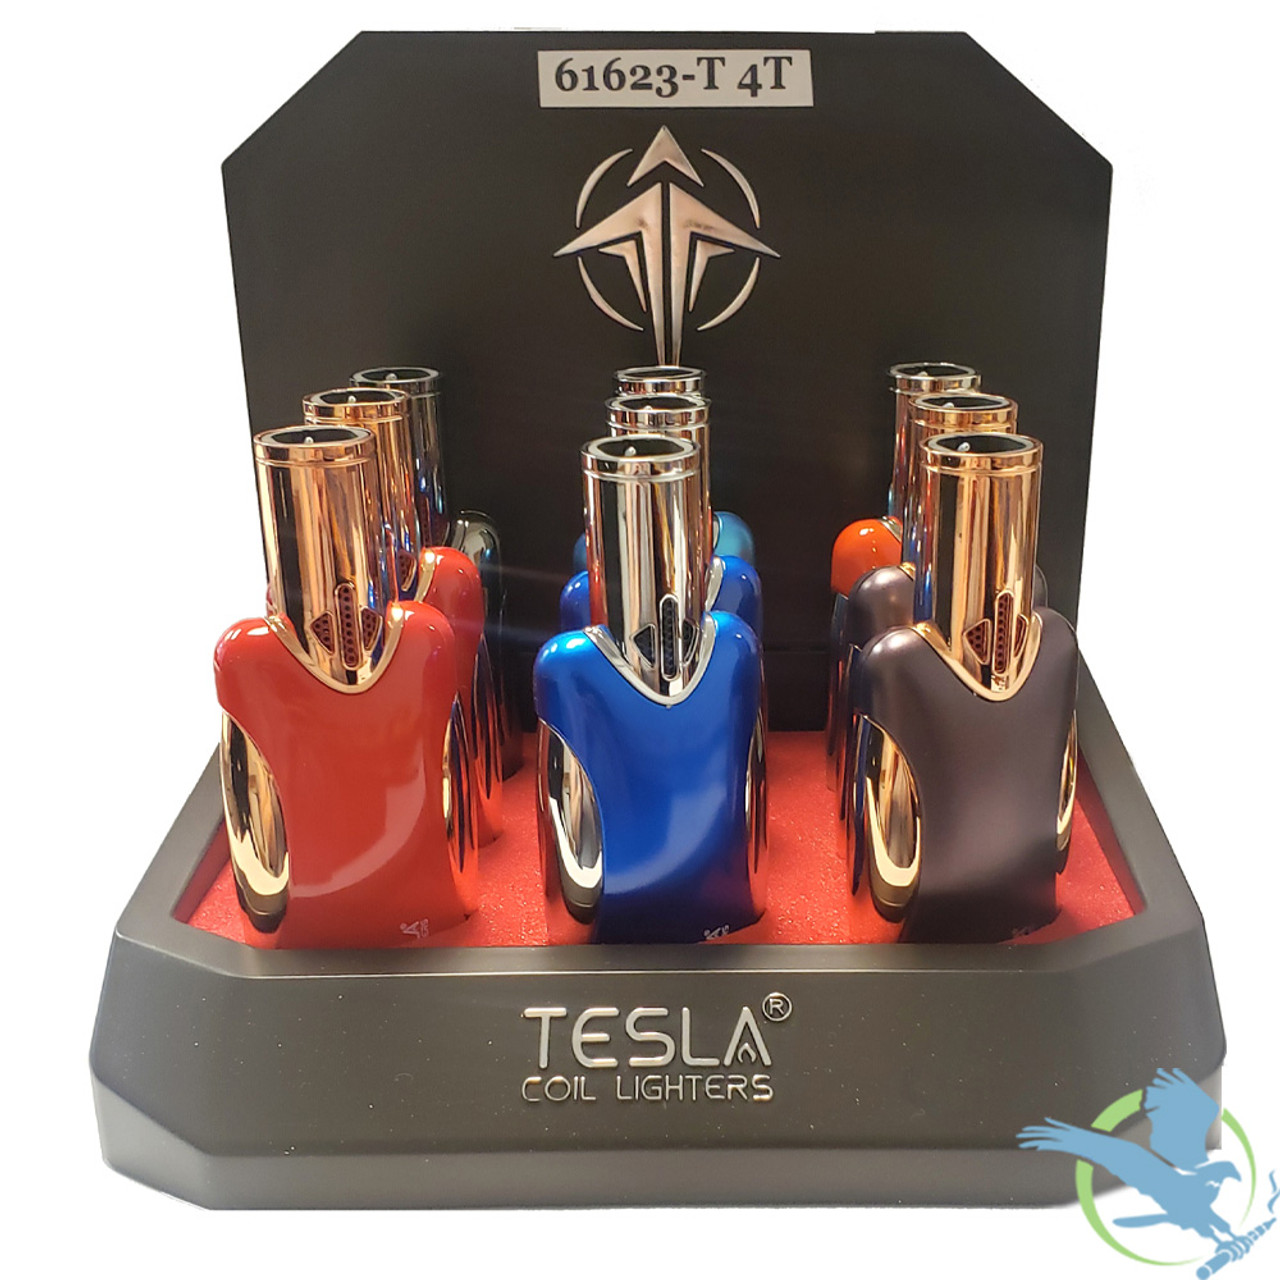 Tesla® Coil Lighters Quad Flame Torch Lighter 